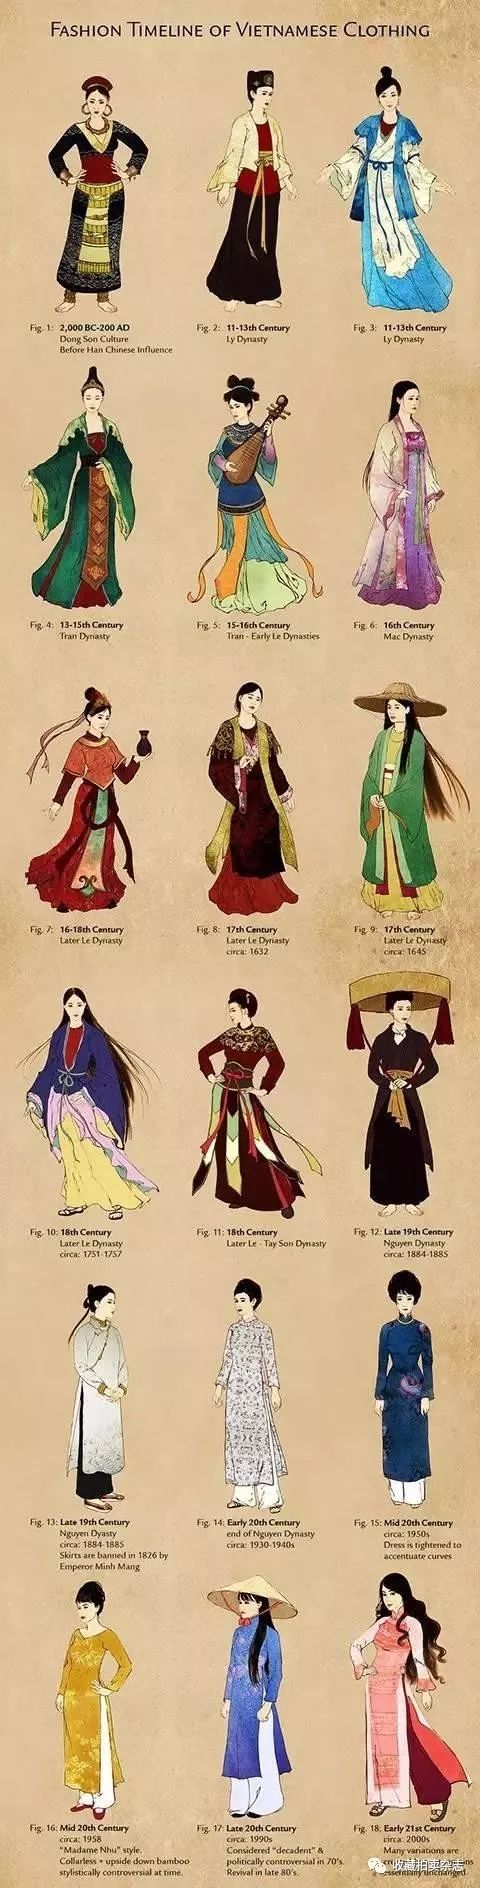 越南传统服饰演变图